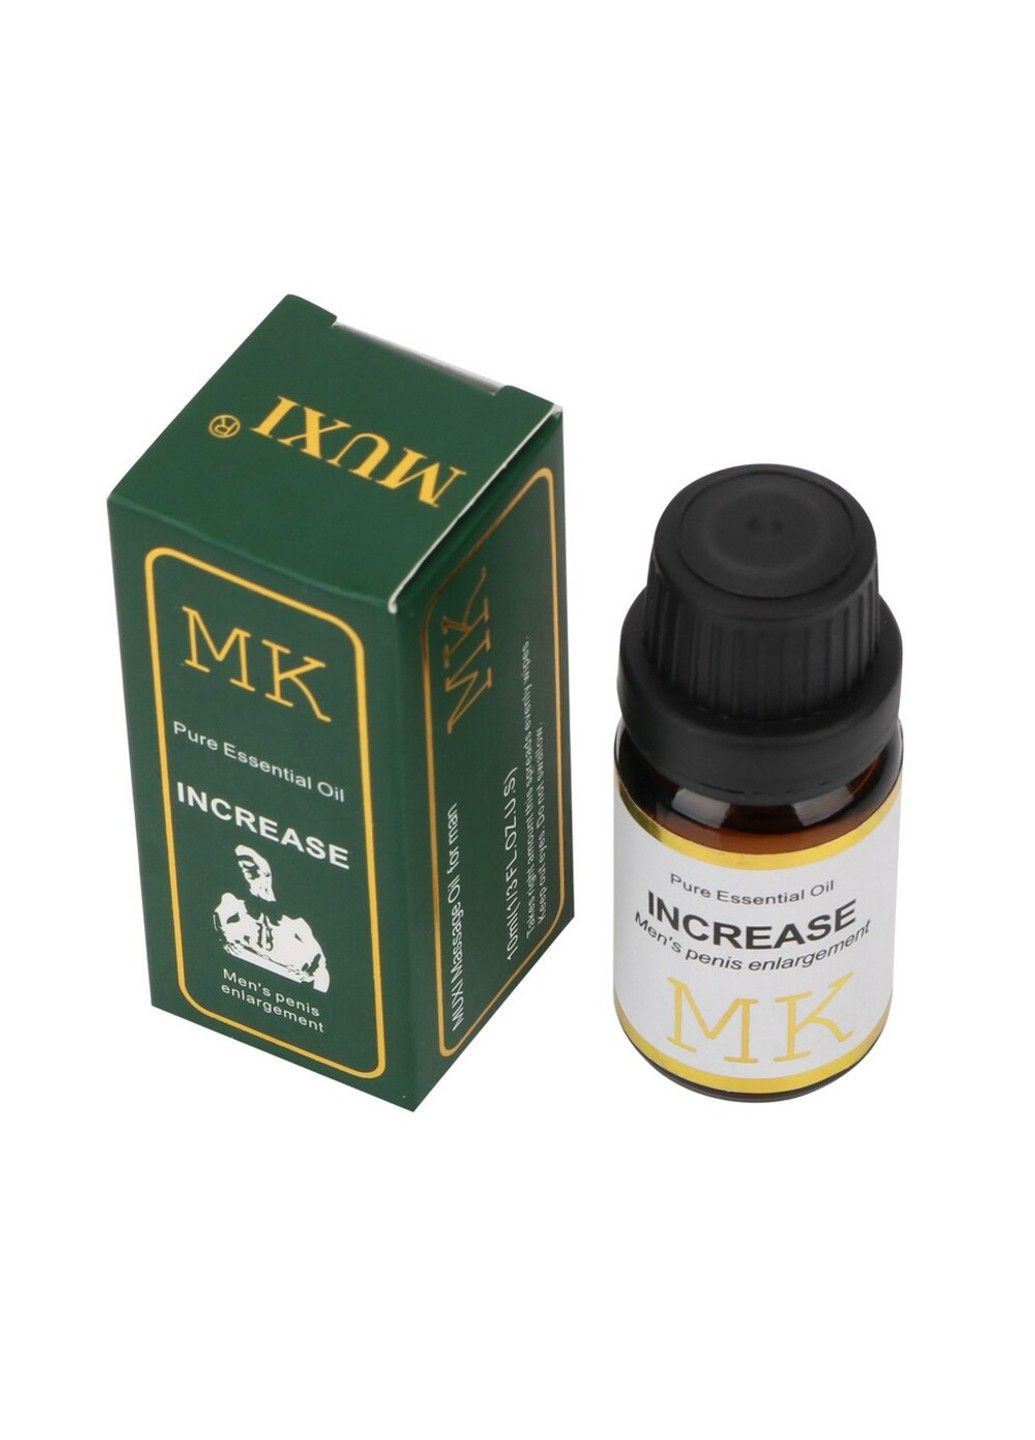 Эфирное масло INCREASE MK 10 ml для увеличения размера пениса Xun Z Lan (284278693)